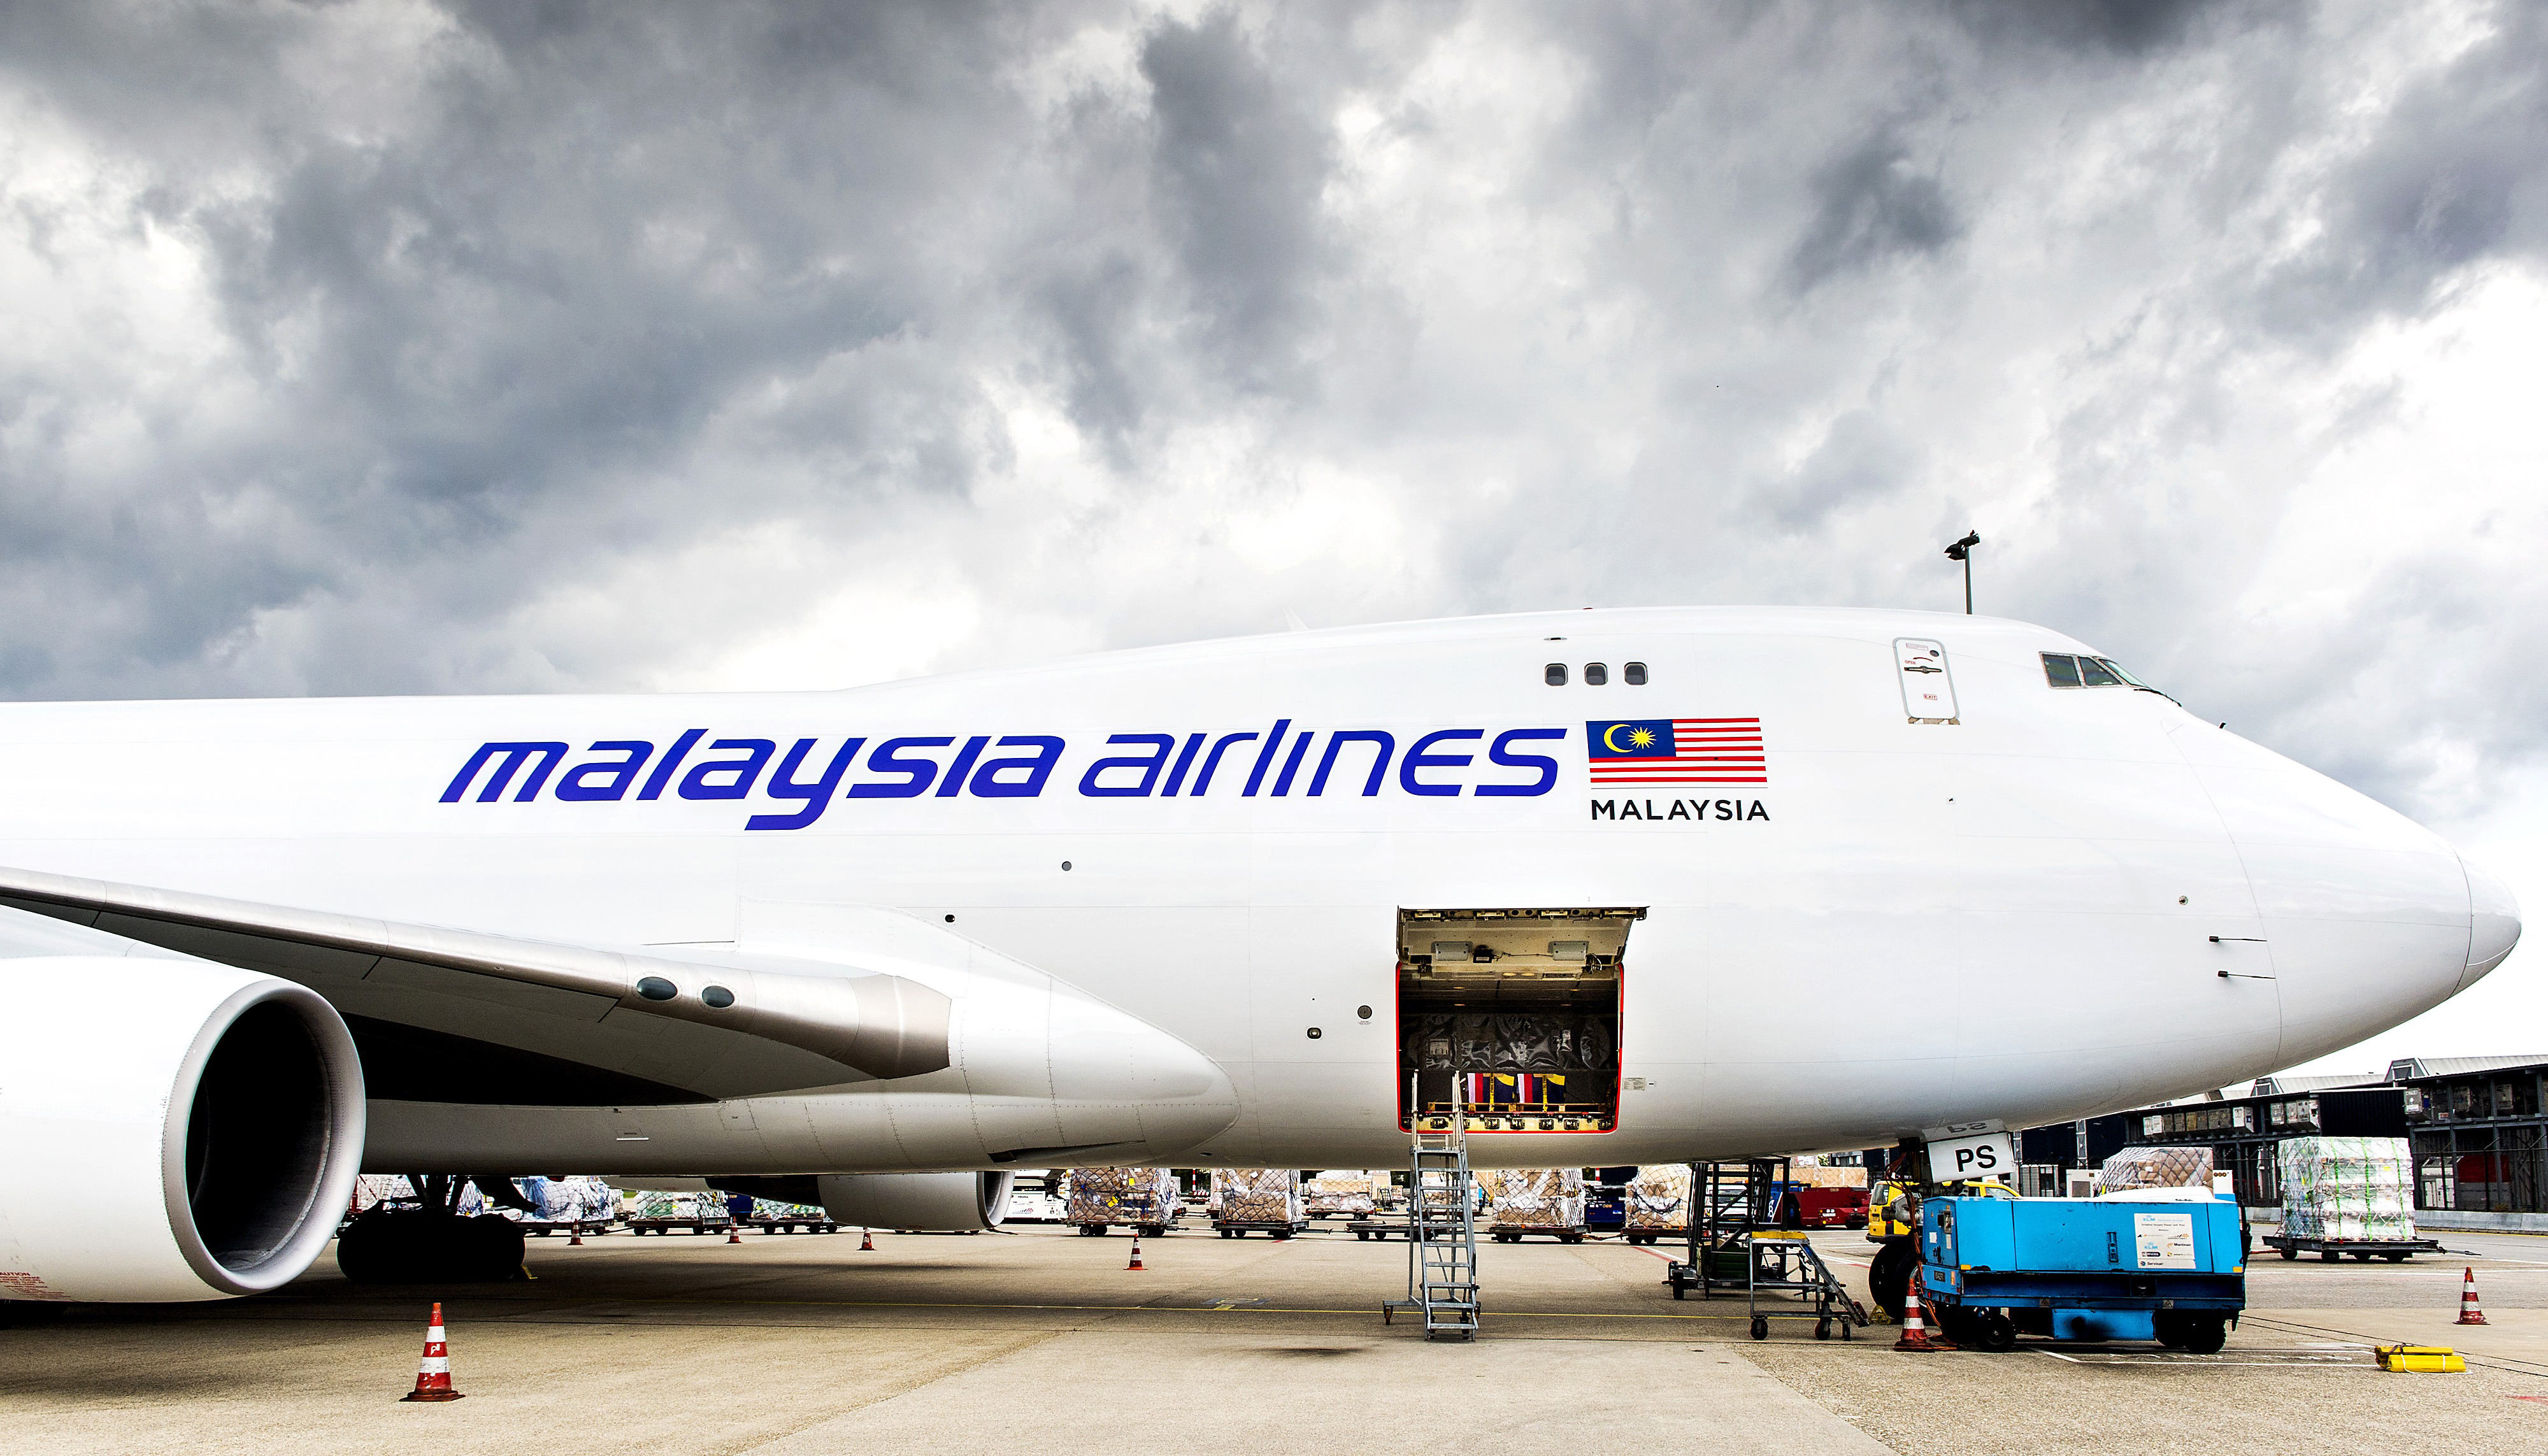 Utasok gyűrték le a bombával fenyegetőző férfit a Malaysia Airlines gépén